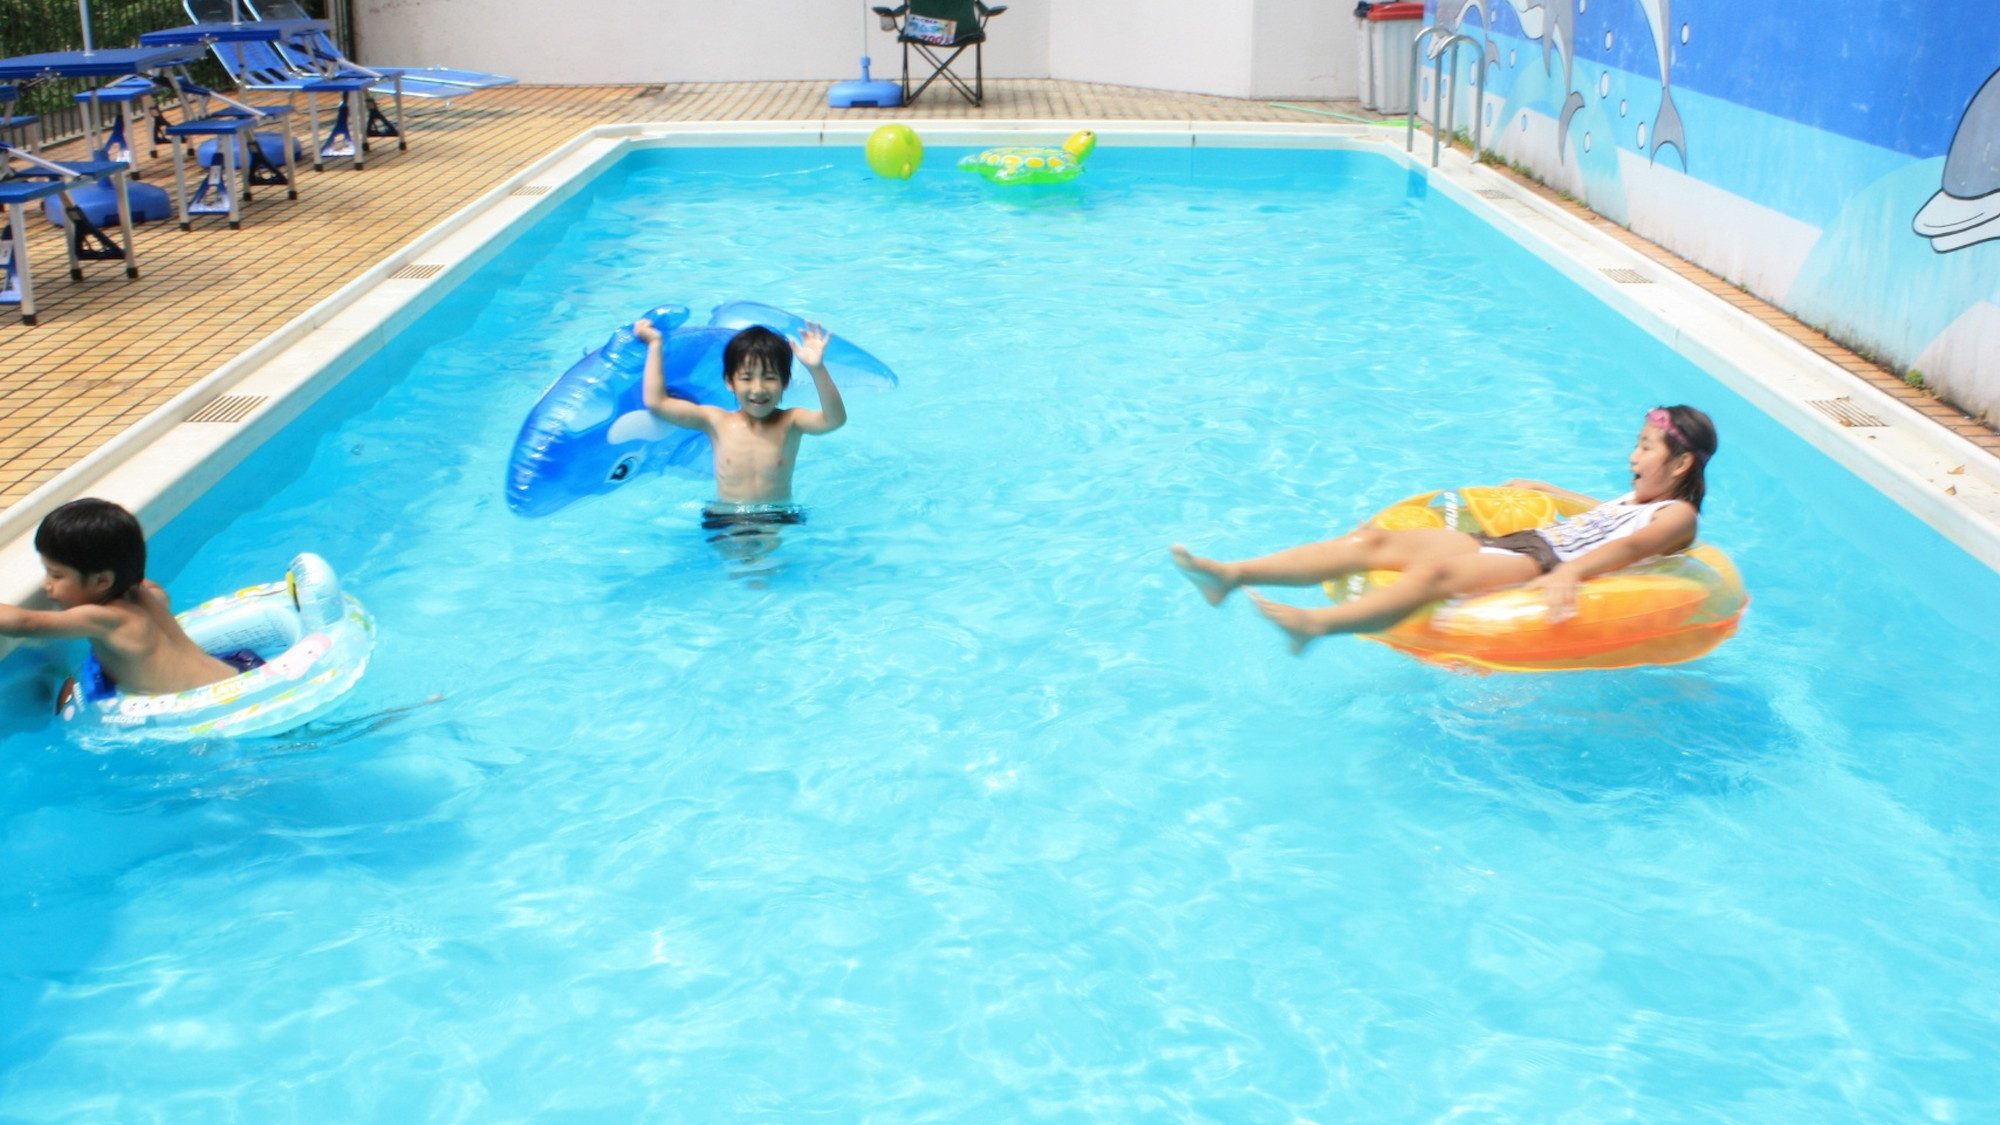 【夏季限定「屋外プール」】水深約80cmで安心して遊べます。7月中旬より